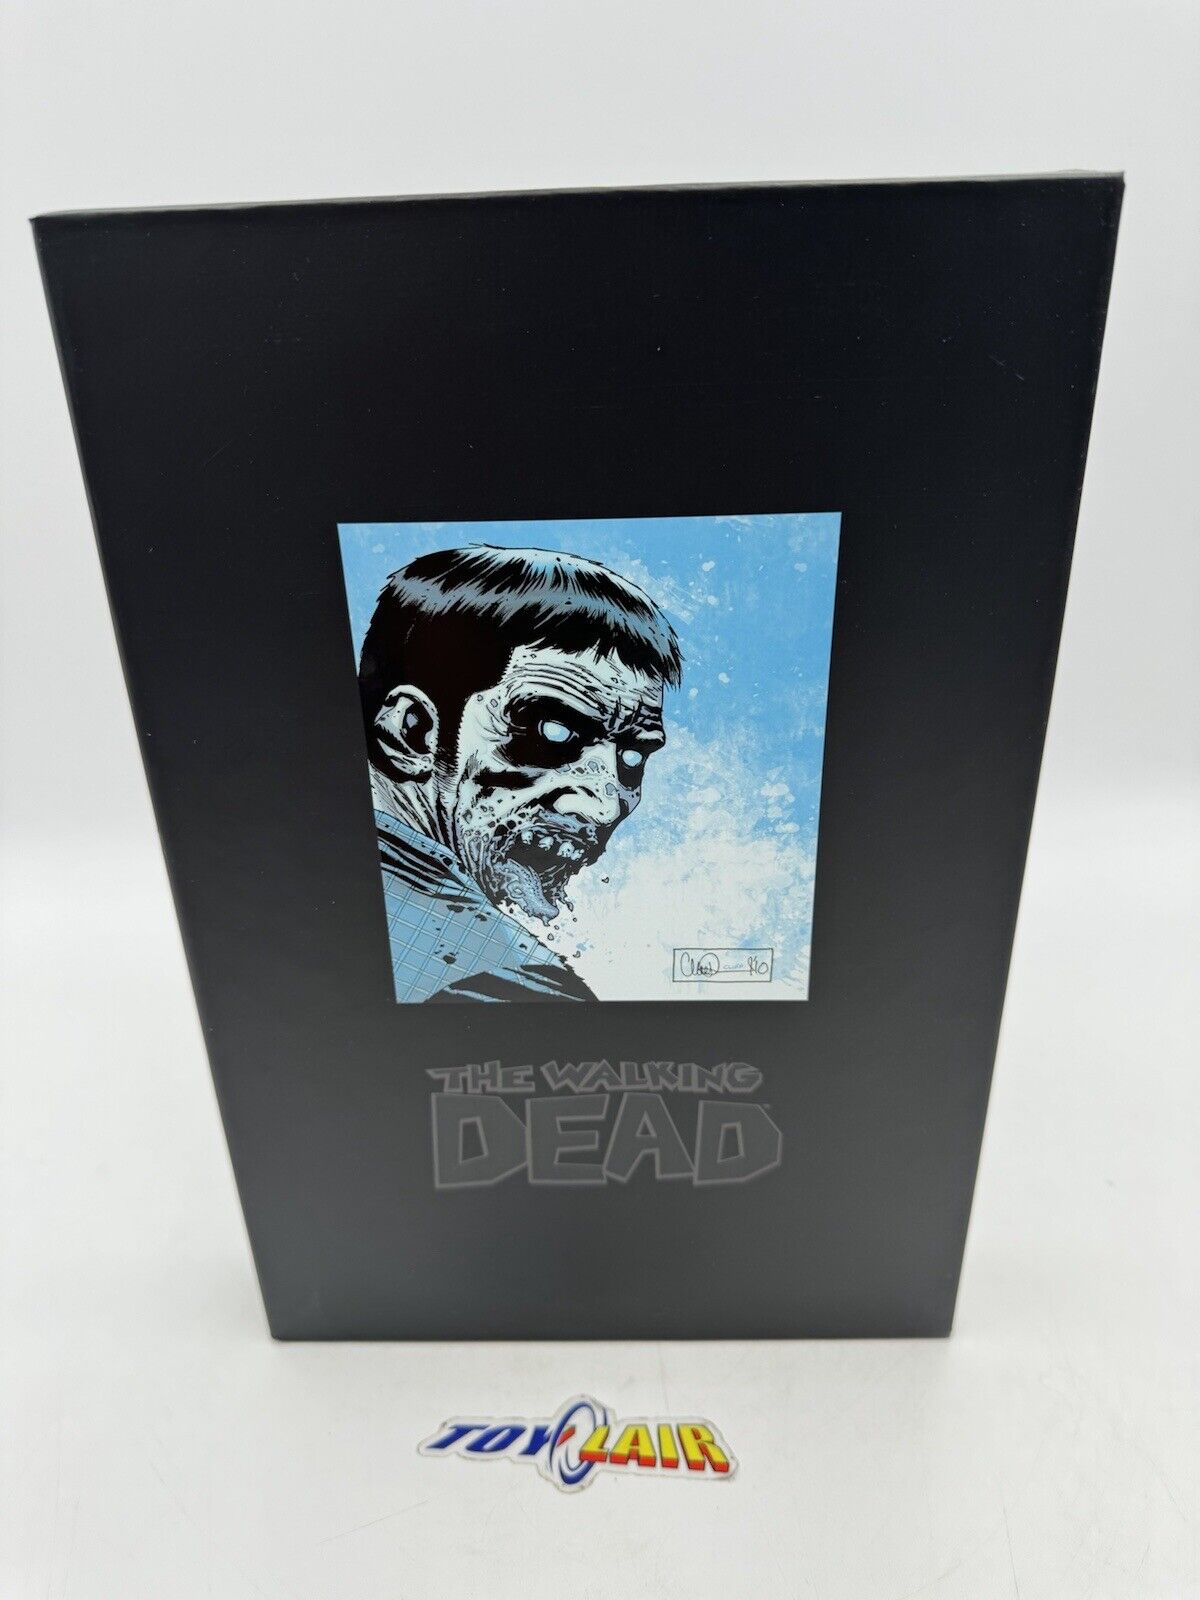 The Walking Dead Deluxe Hardcover Omnibus Volume 3